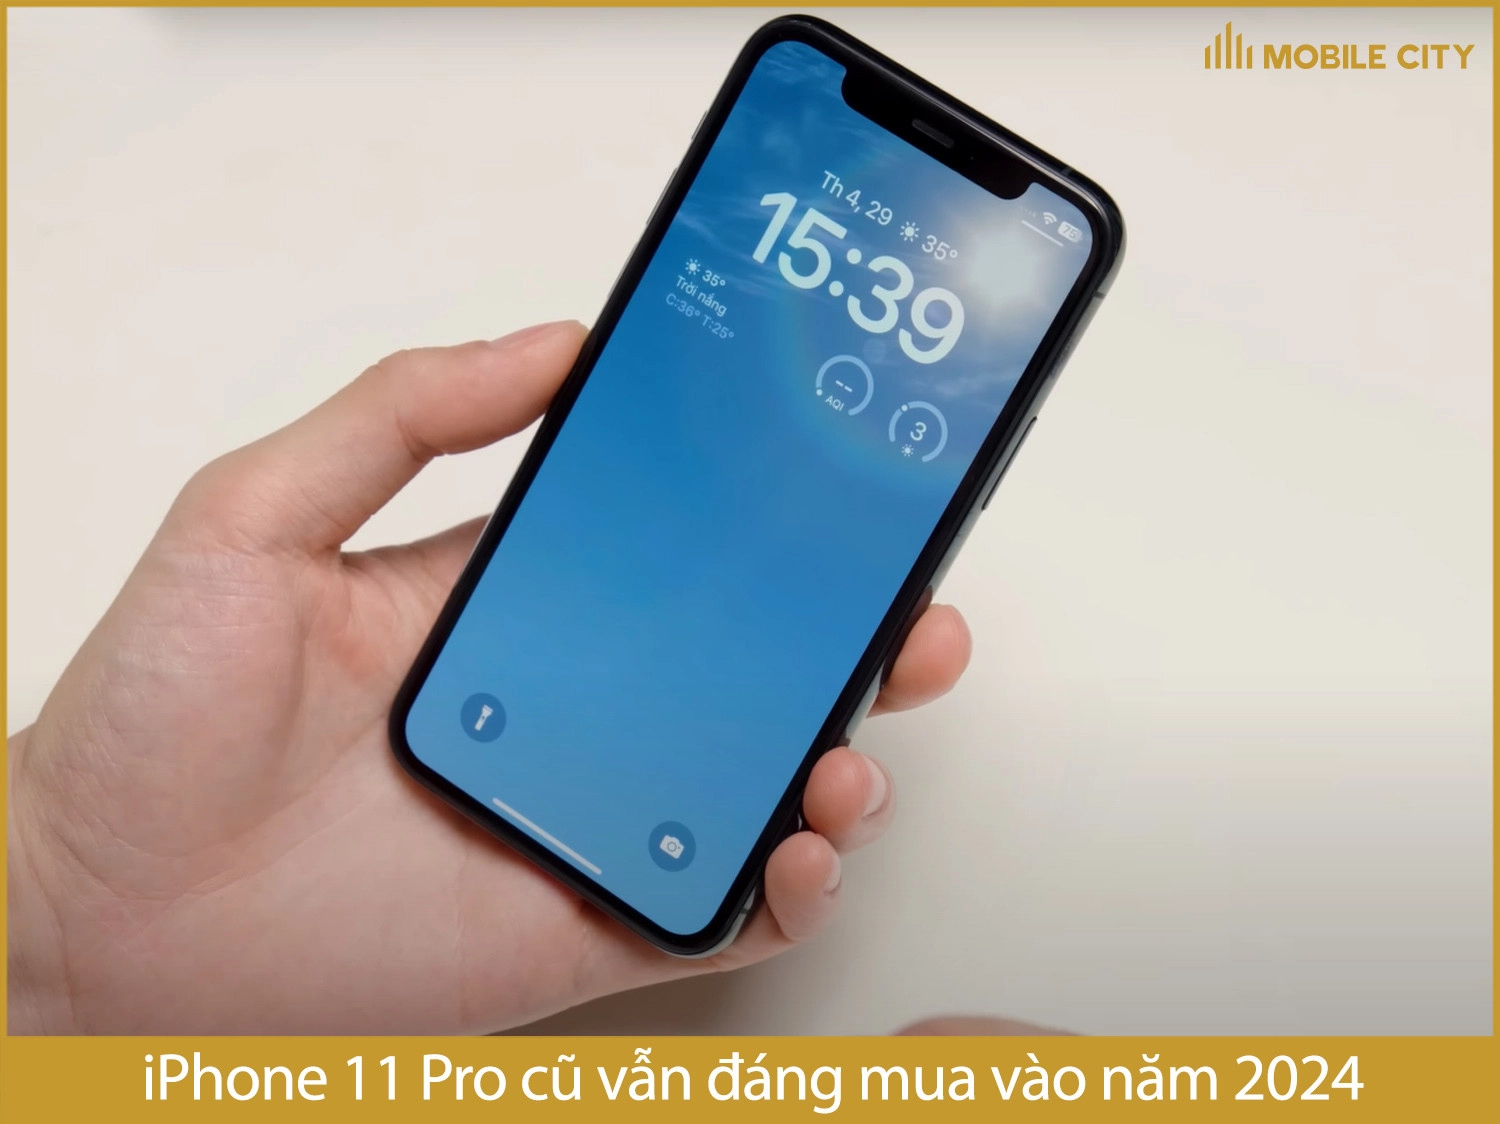 iPhone 11 Pro cũ có đáng mua vào năm 2024 không?